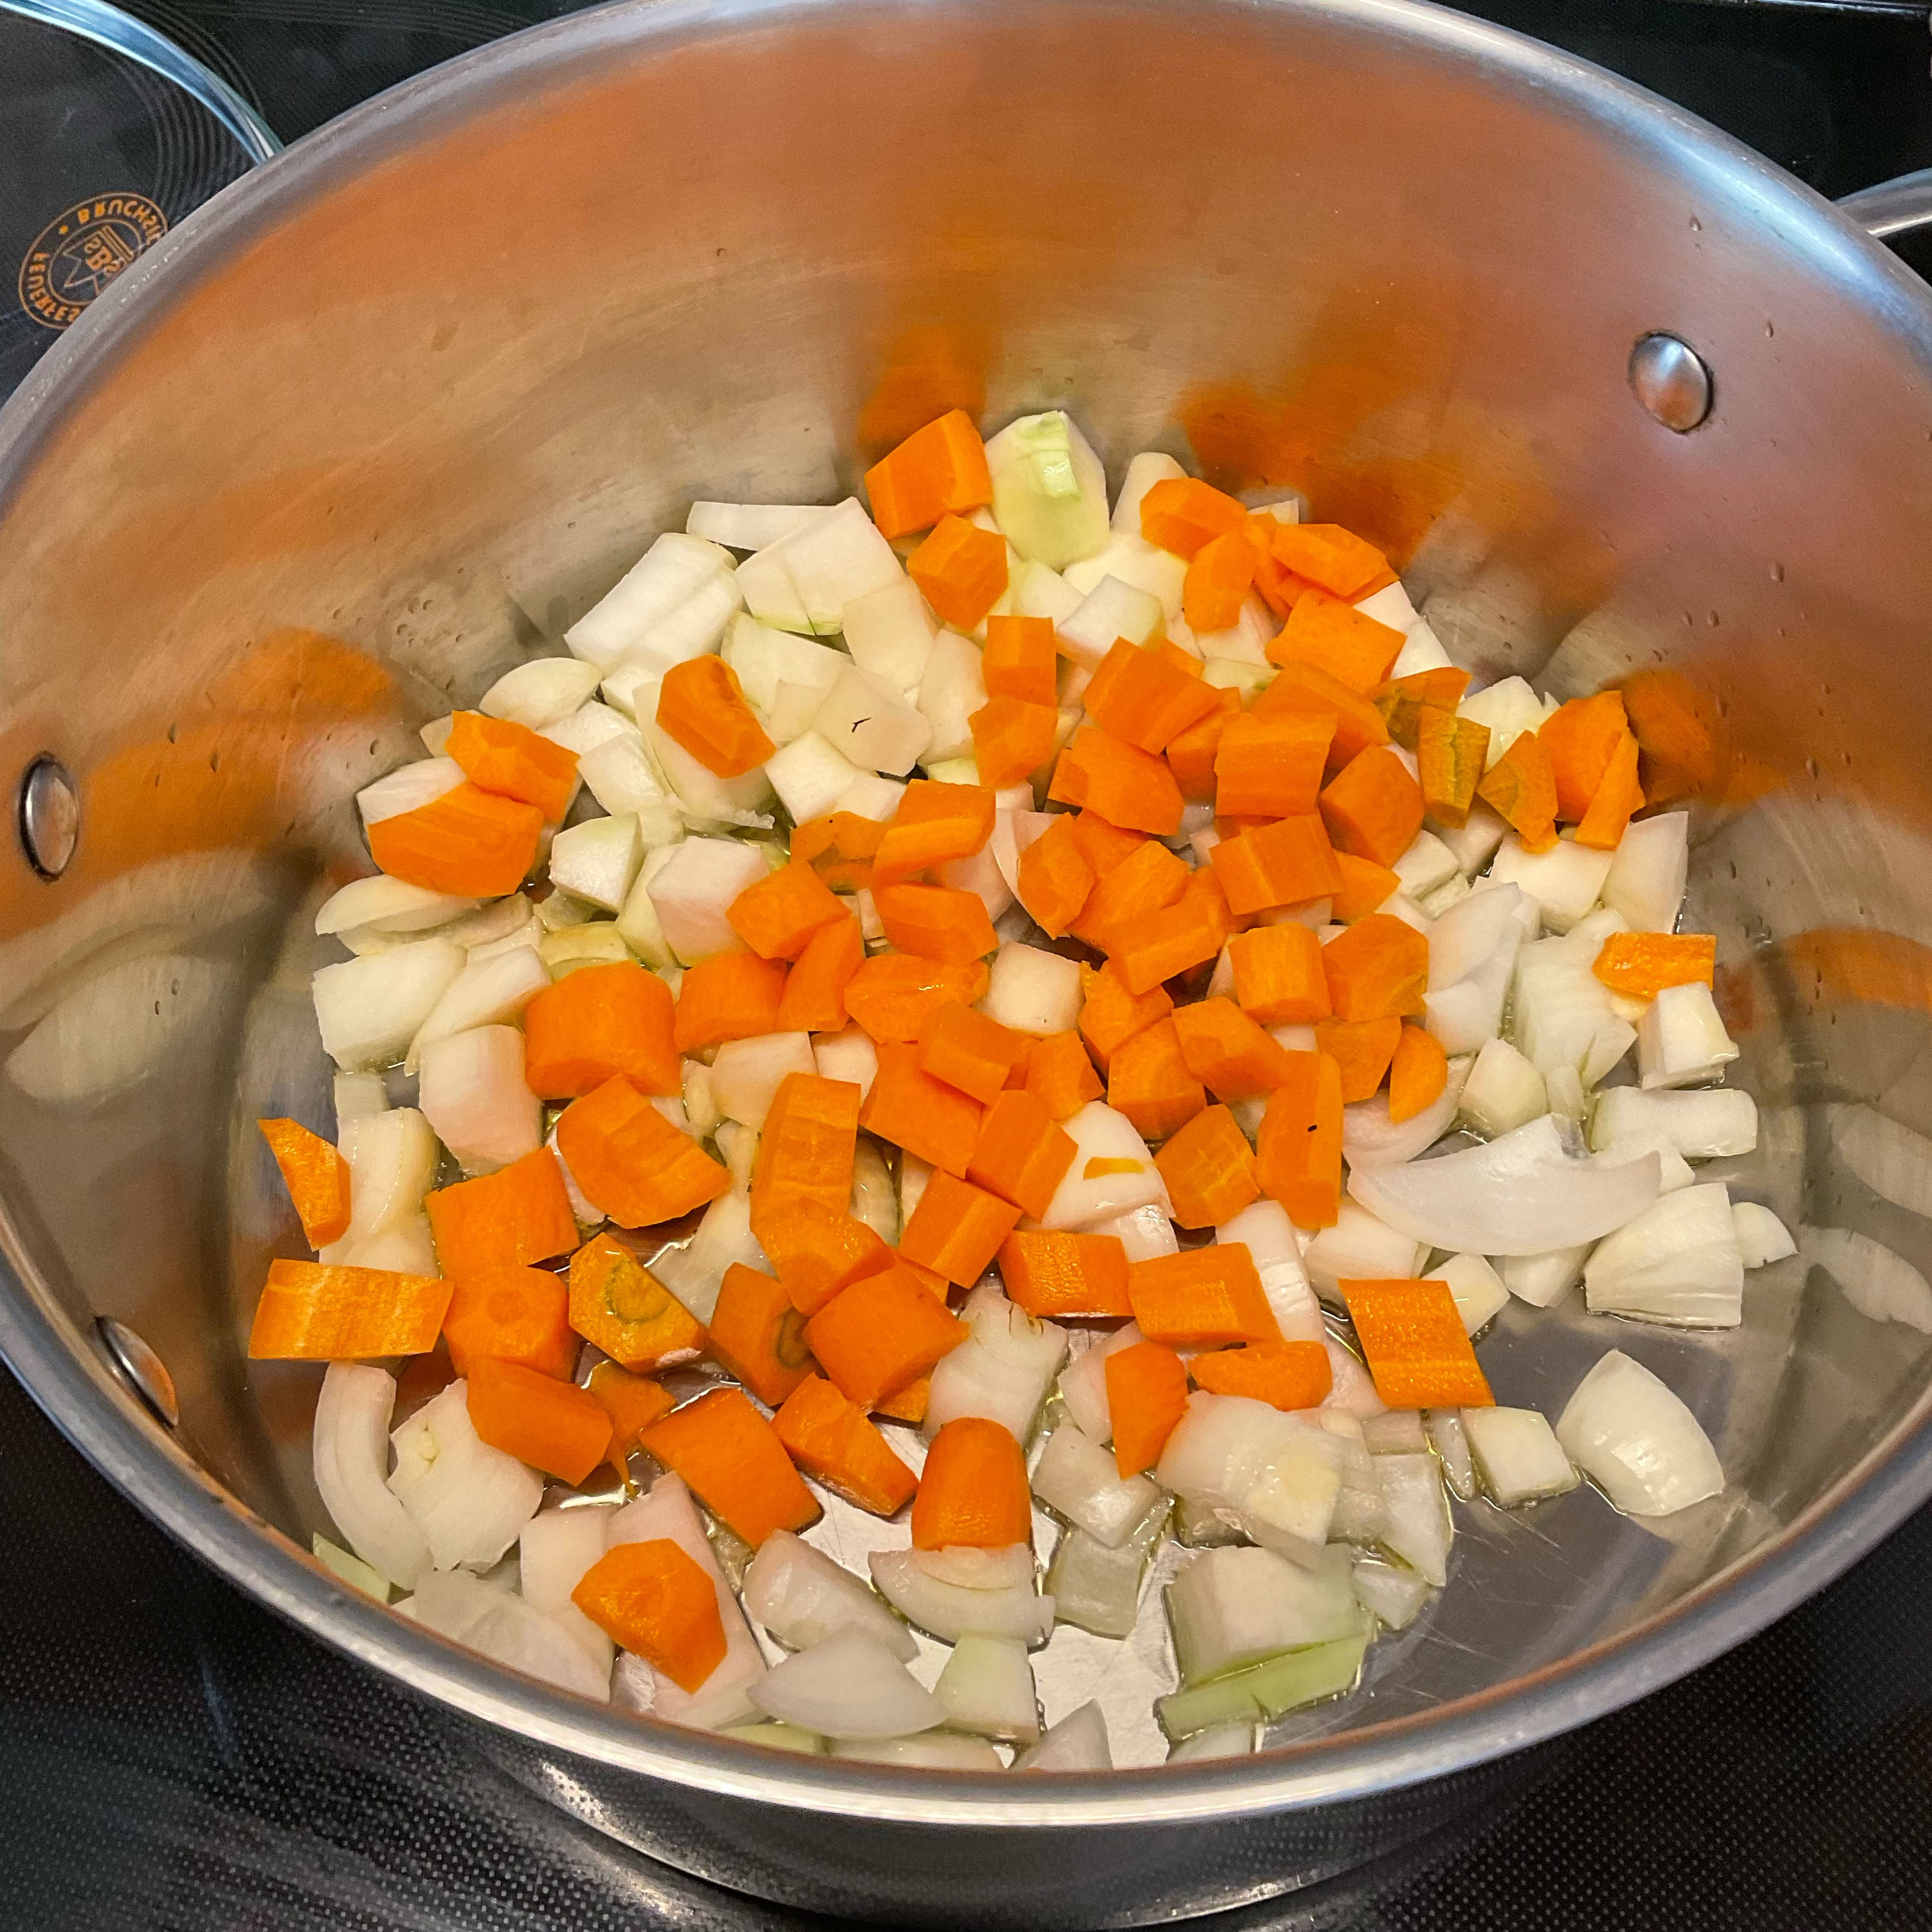 Zwiebeln, Karotten und Knollensellerie putzen, würfeln und in wenig Rapsöl scharf anbraten.